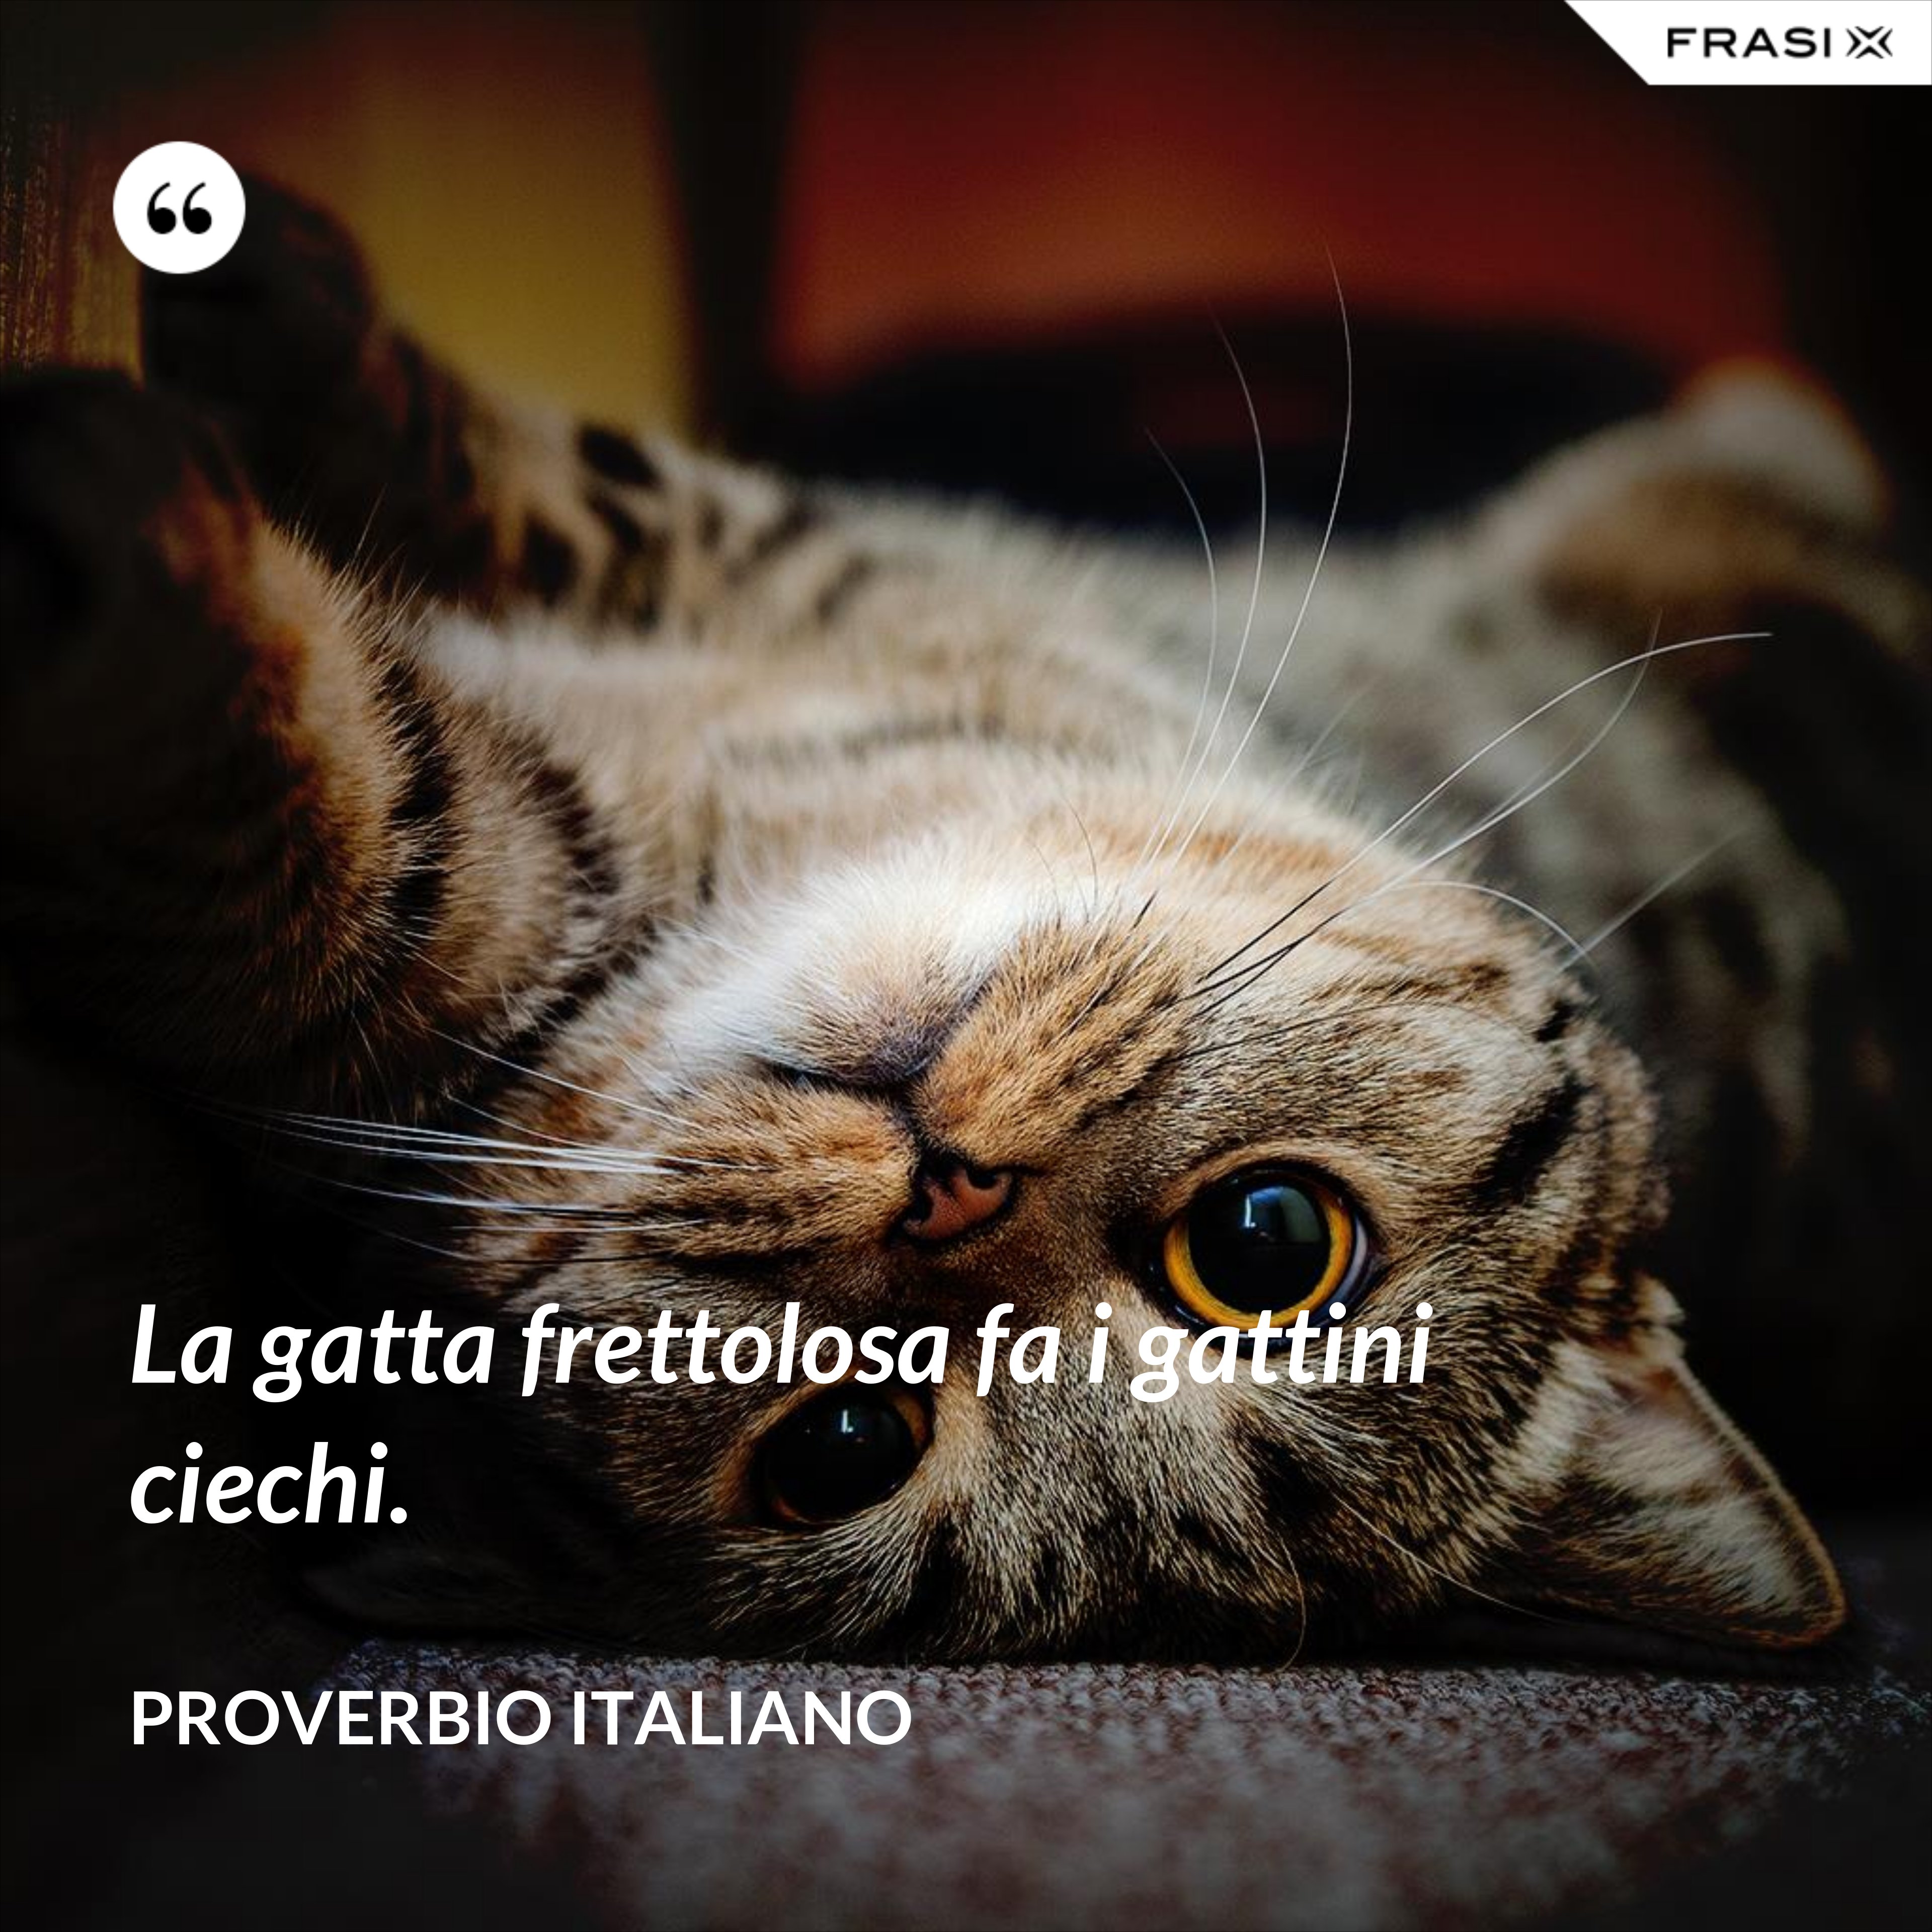 La gatta frettolosa fa i gattini ciechi. - Proverbio italiano